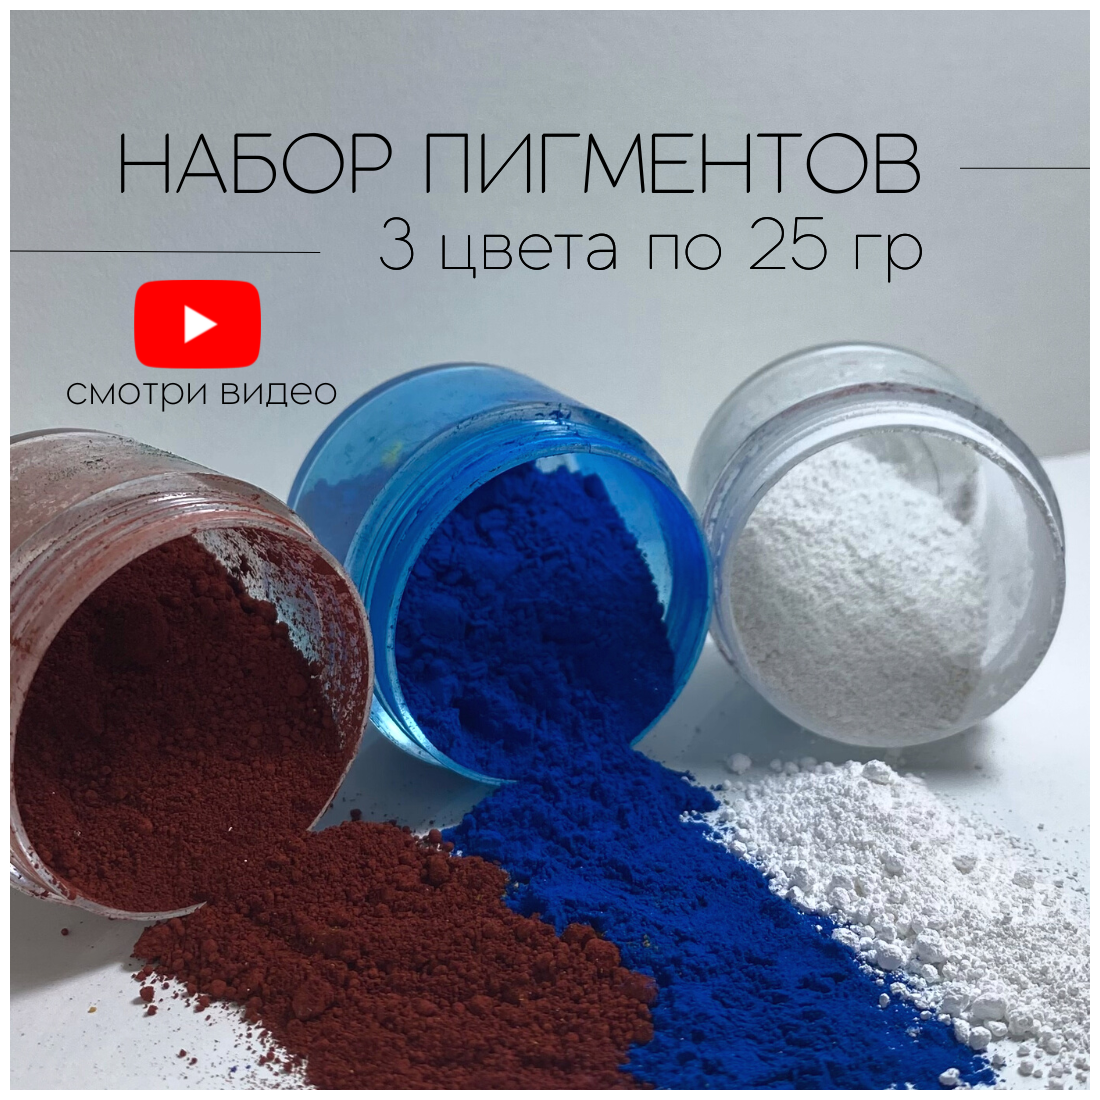 Набор пигментов 3 цвета по 25 гр (белый, красный, синий) железооксидных для ЛКМ, бетона, гипса, эпоксидной смолы - фотография № 1